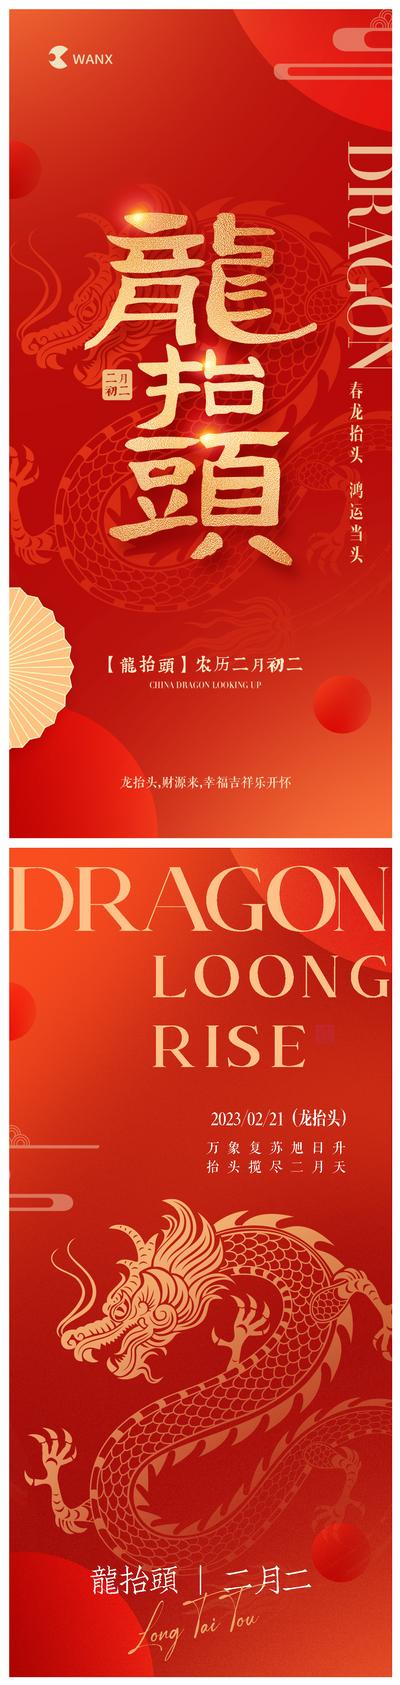 南门网 广告 海报 地产 龙抬头 红金 中国传统节日 二月初二 节日 龙年